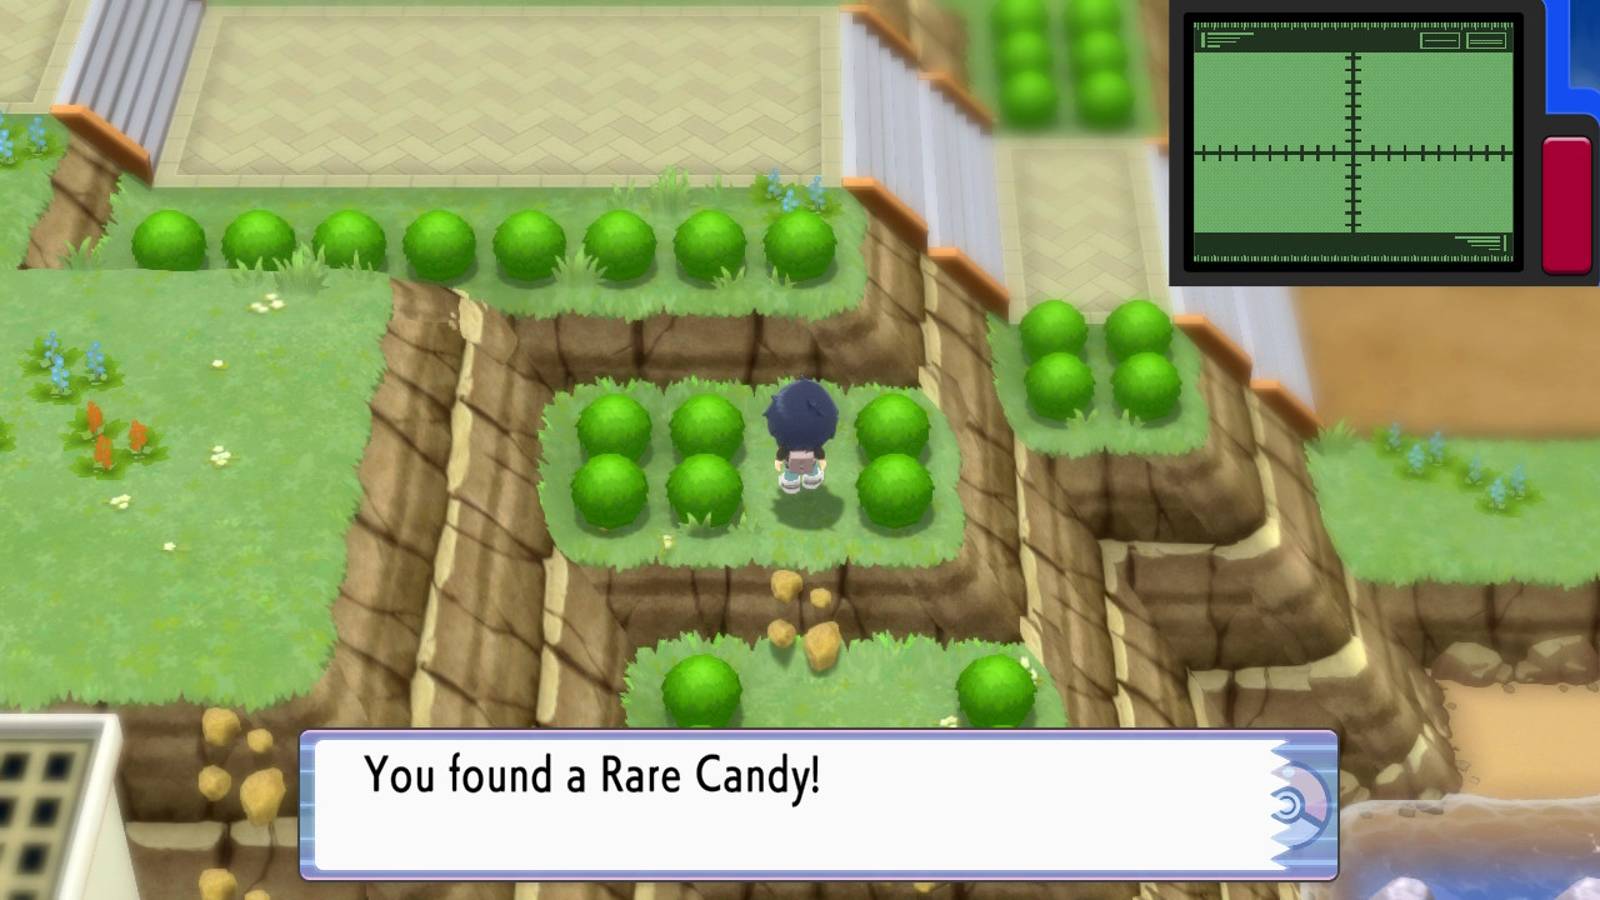  Les joueurs peuvent trouver des bonbons rares dans la région de Sinnoh de Pokemon Brilliant Diamond et Shining Pearl.